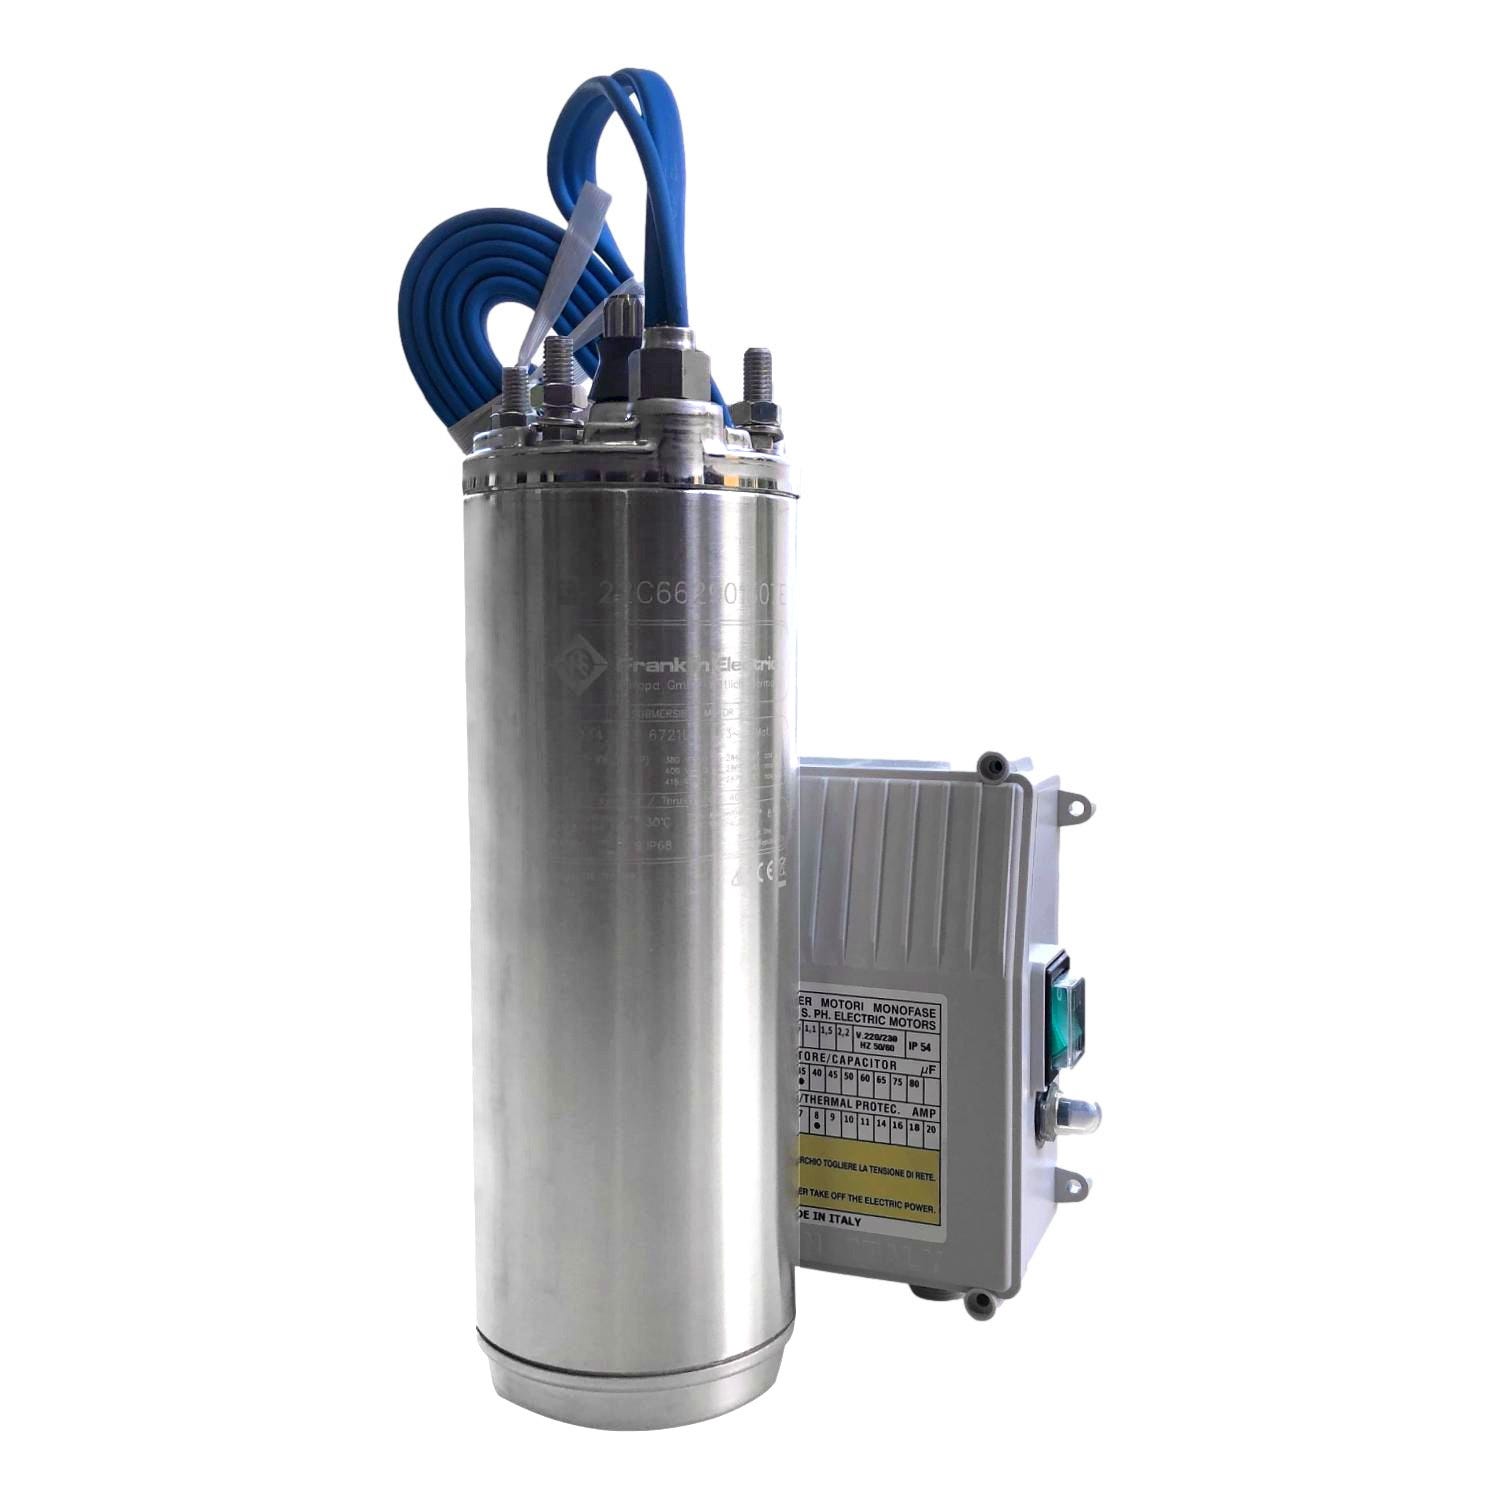 Pompe à eau propre électrique Gardena BASIC 600W